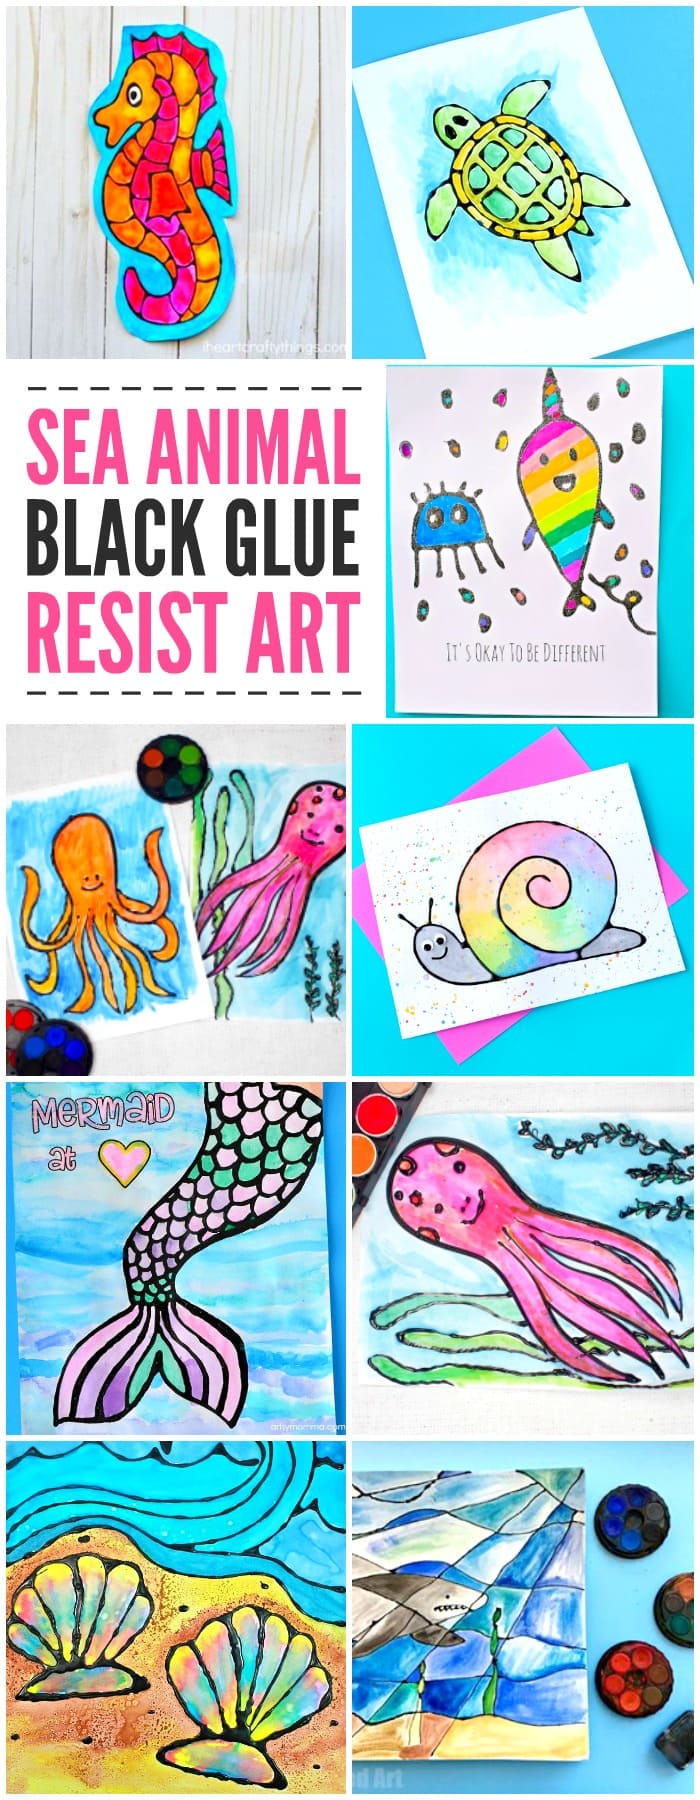 Sea Animal Black Glue Resist Art Ideas for Kids